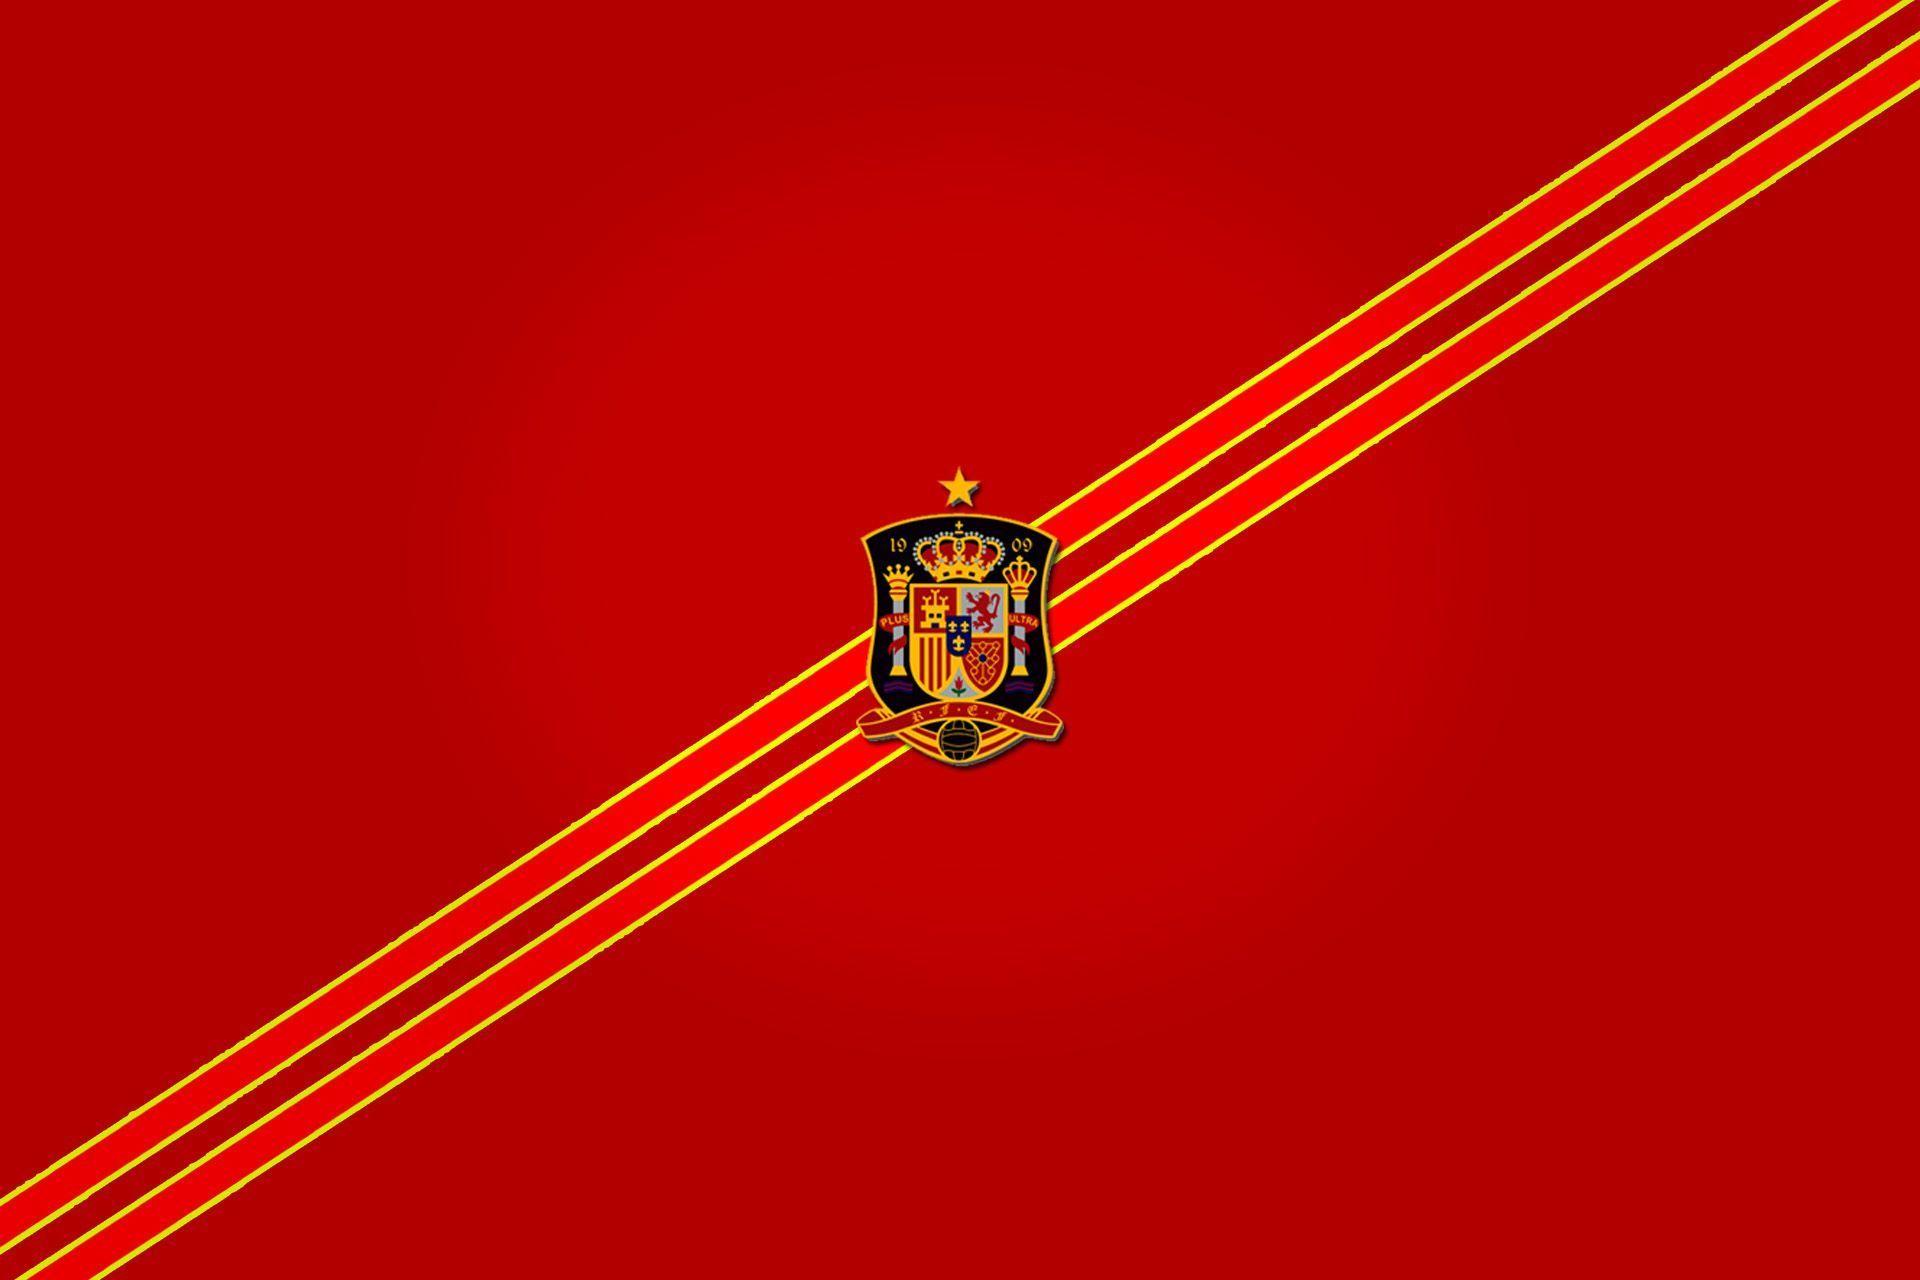 Spain Football Logo Desktop Wallpaper. New Football Wallpaper